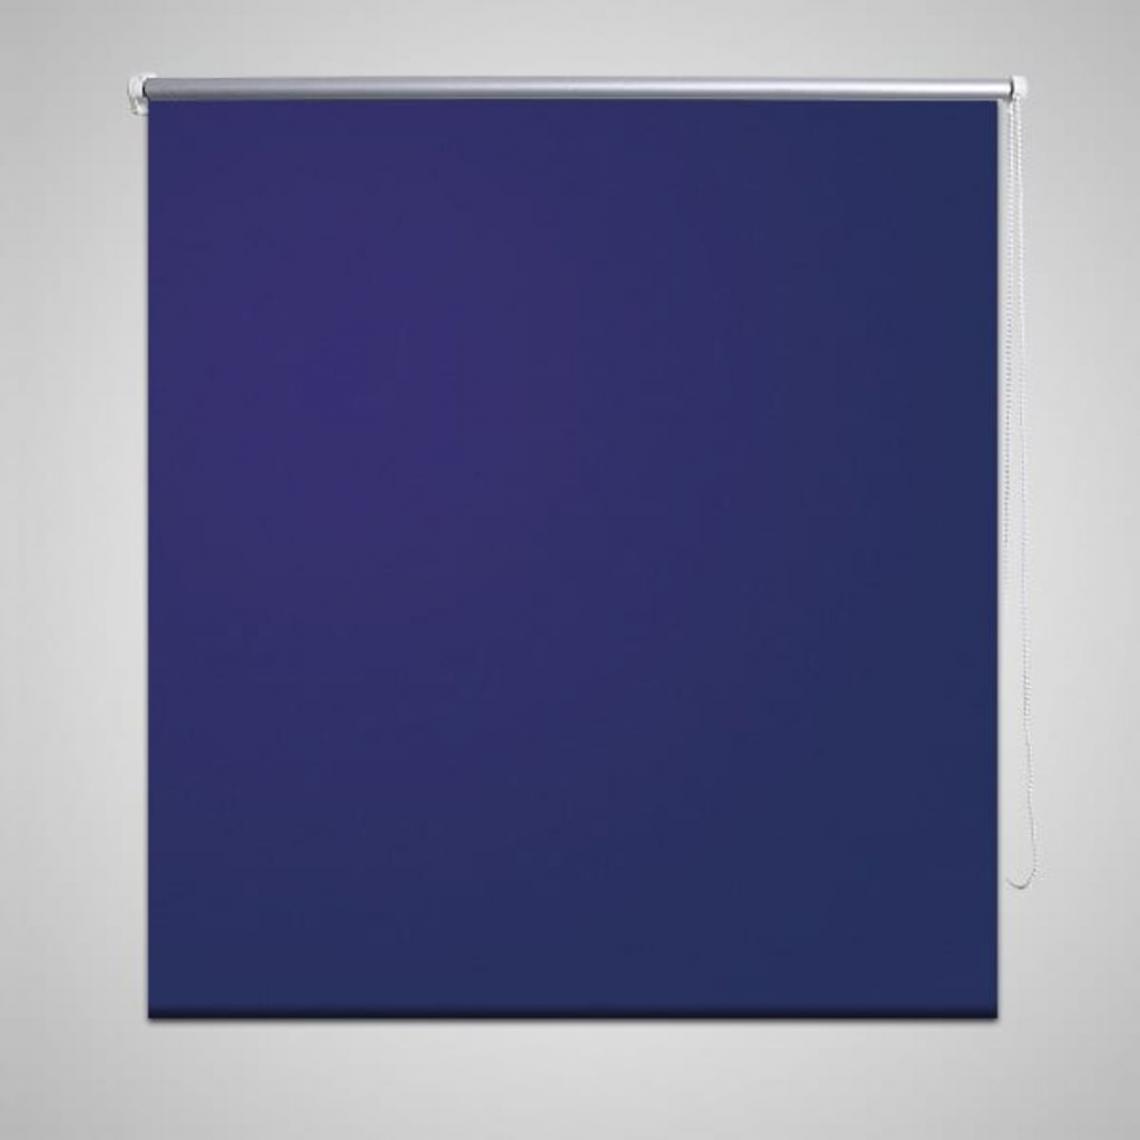 Hucoco - Store enrouleur occultant 80 x 175 cm bleu - Bleu - Store compatible Velux